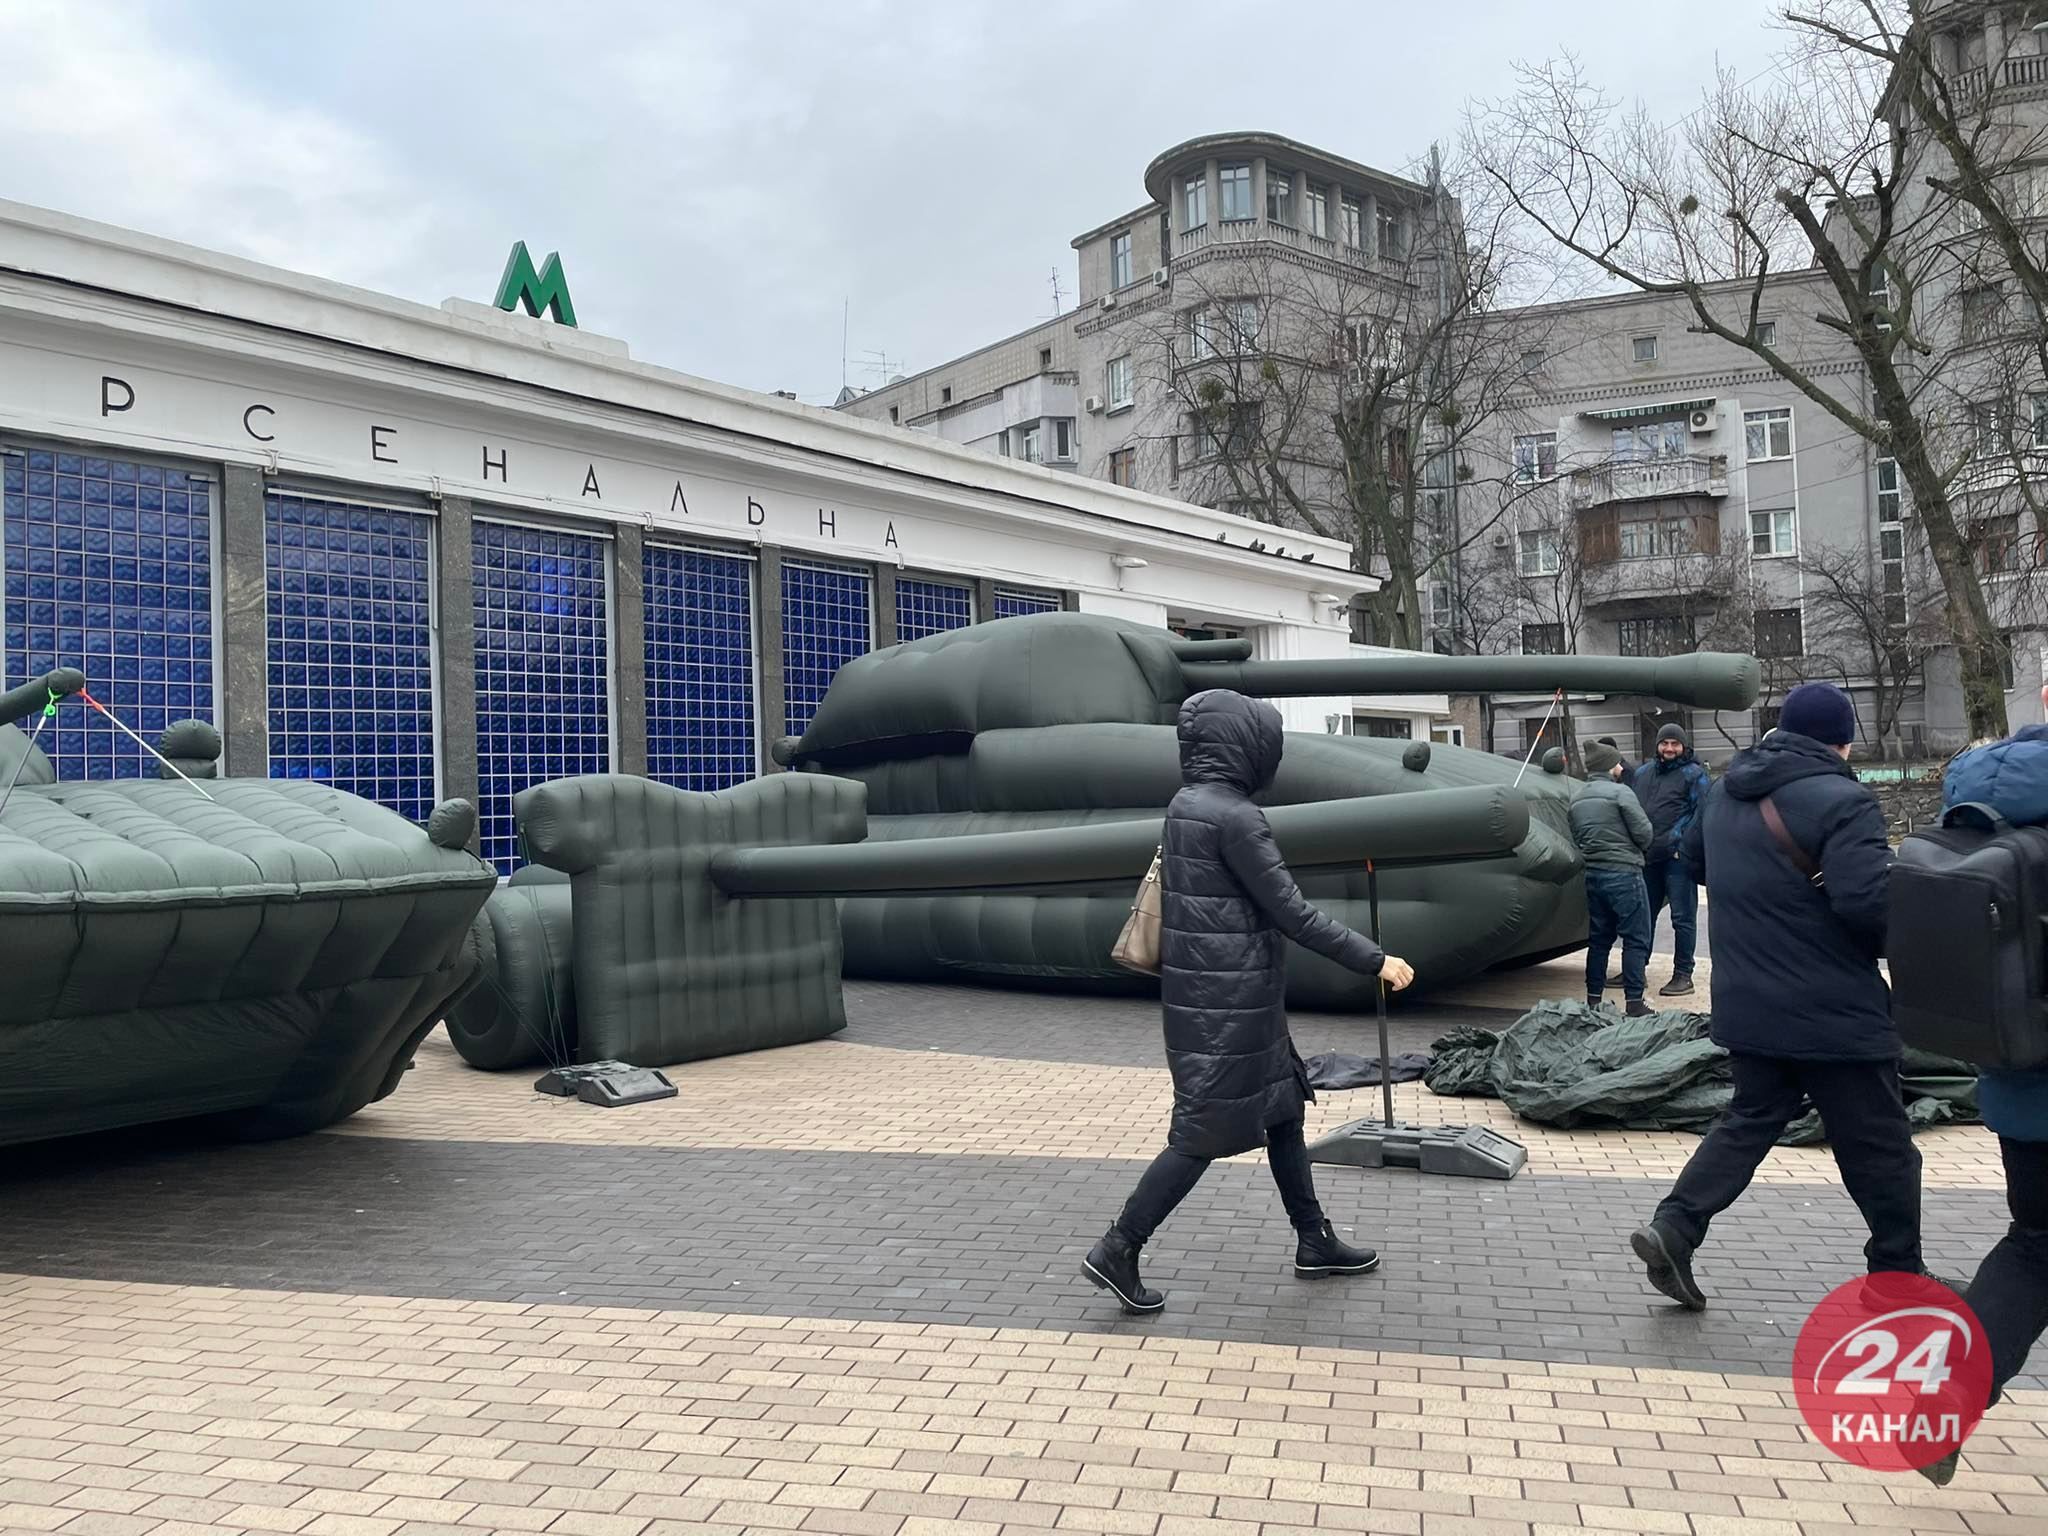 Возле метро "Арсенальная" заметили надувную артиллерию: фото загадочной инсталляции